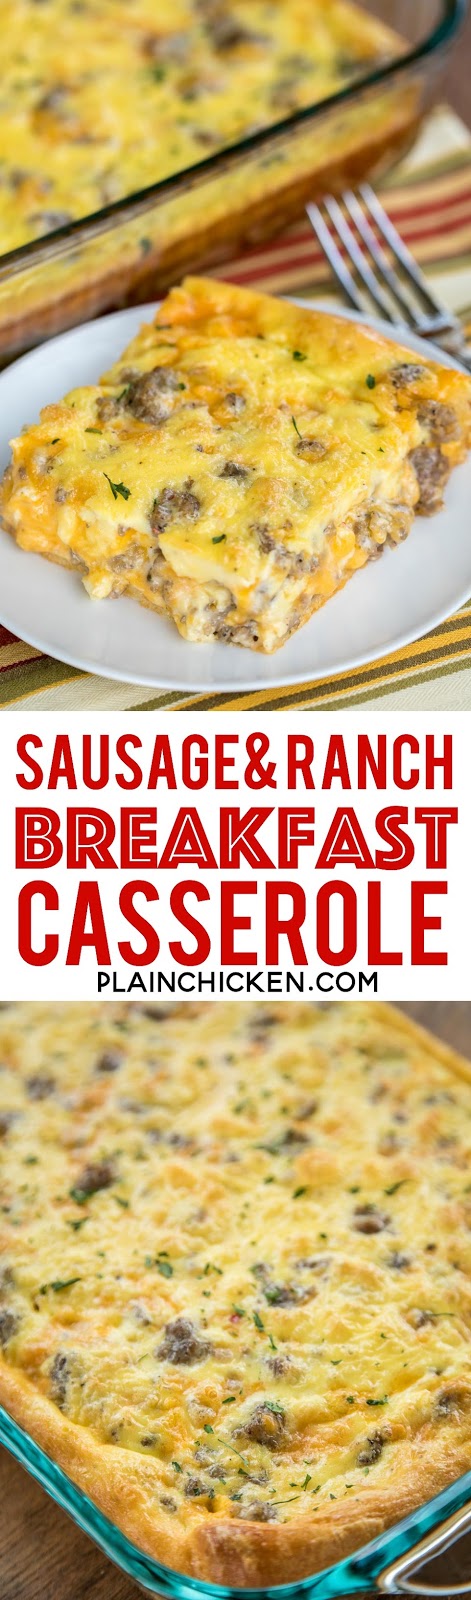 Sausage and Ranch Breakfast Casserole | Plain Chicken®